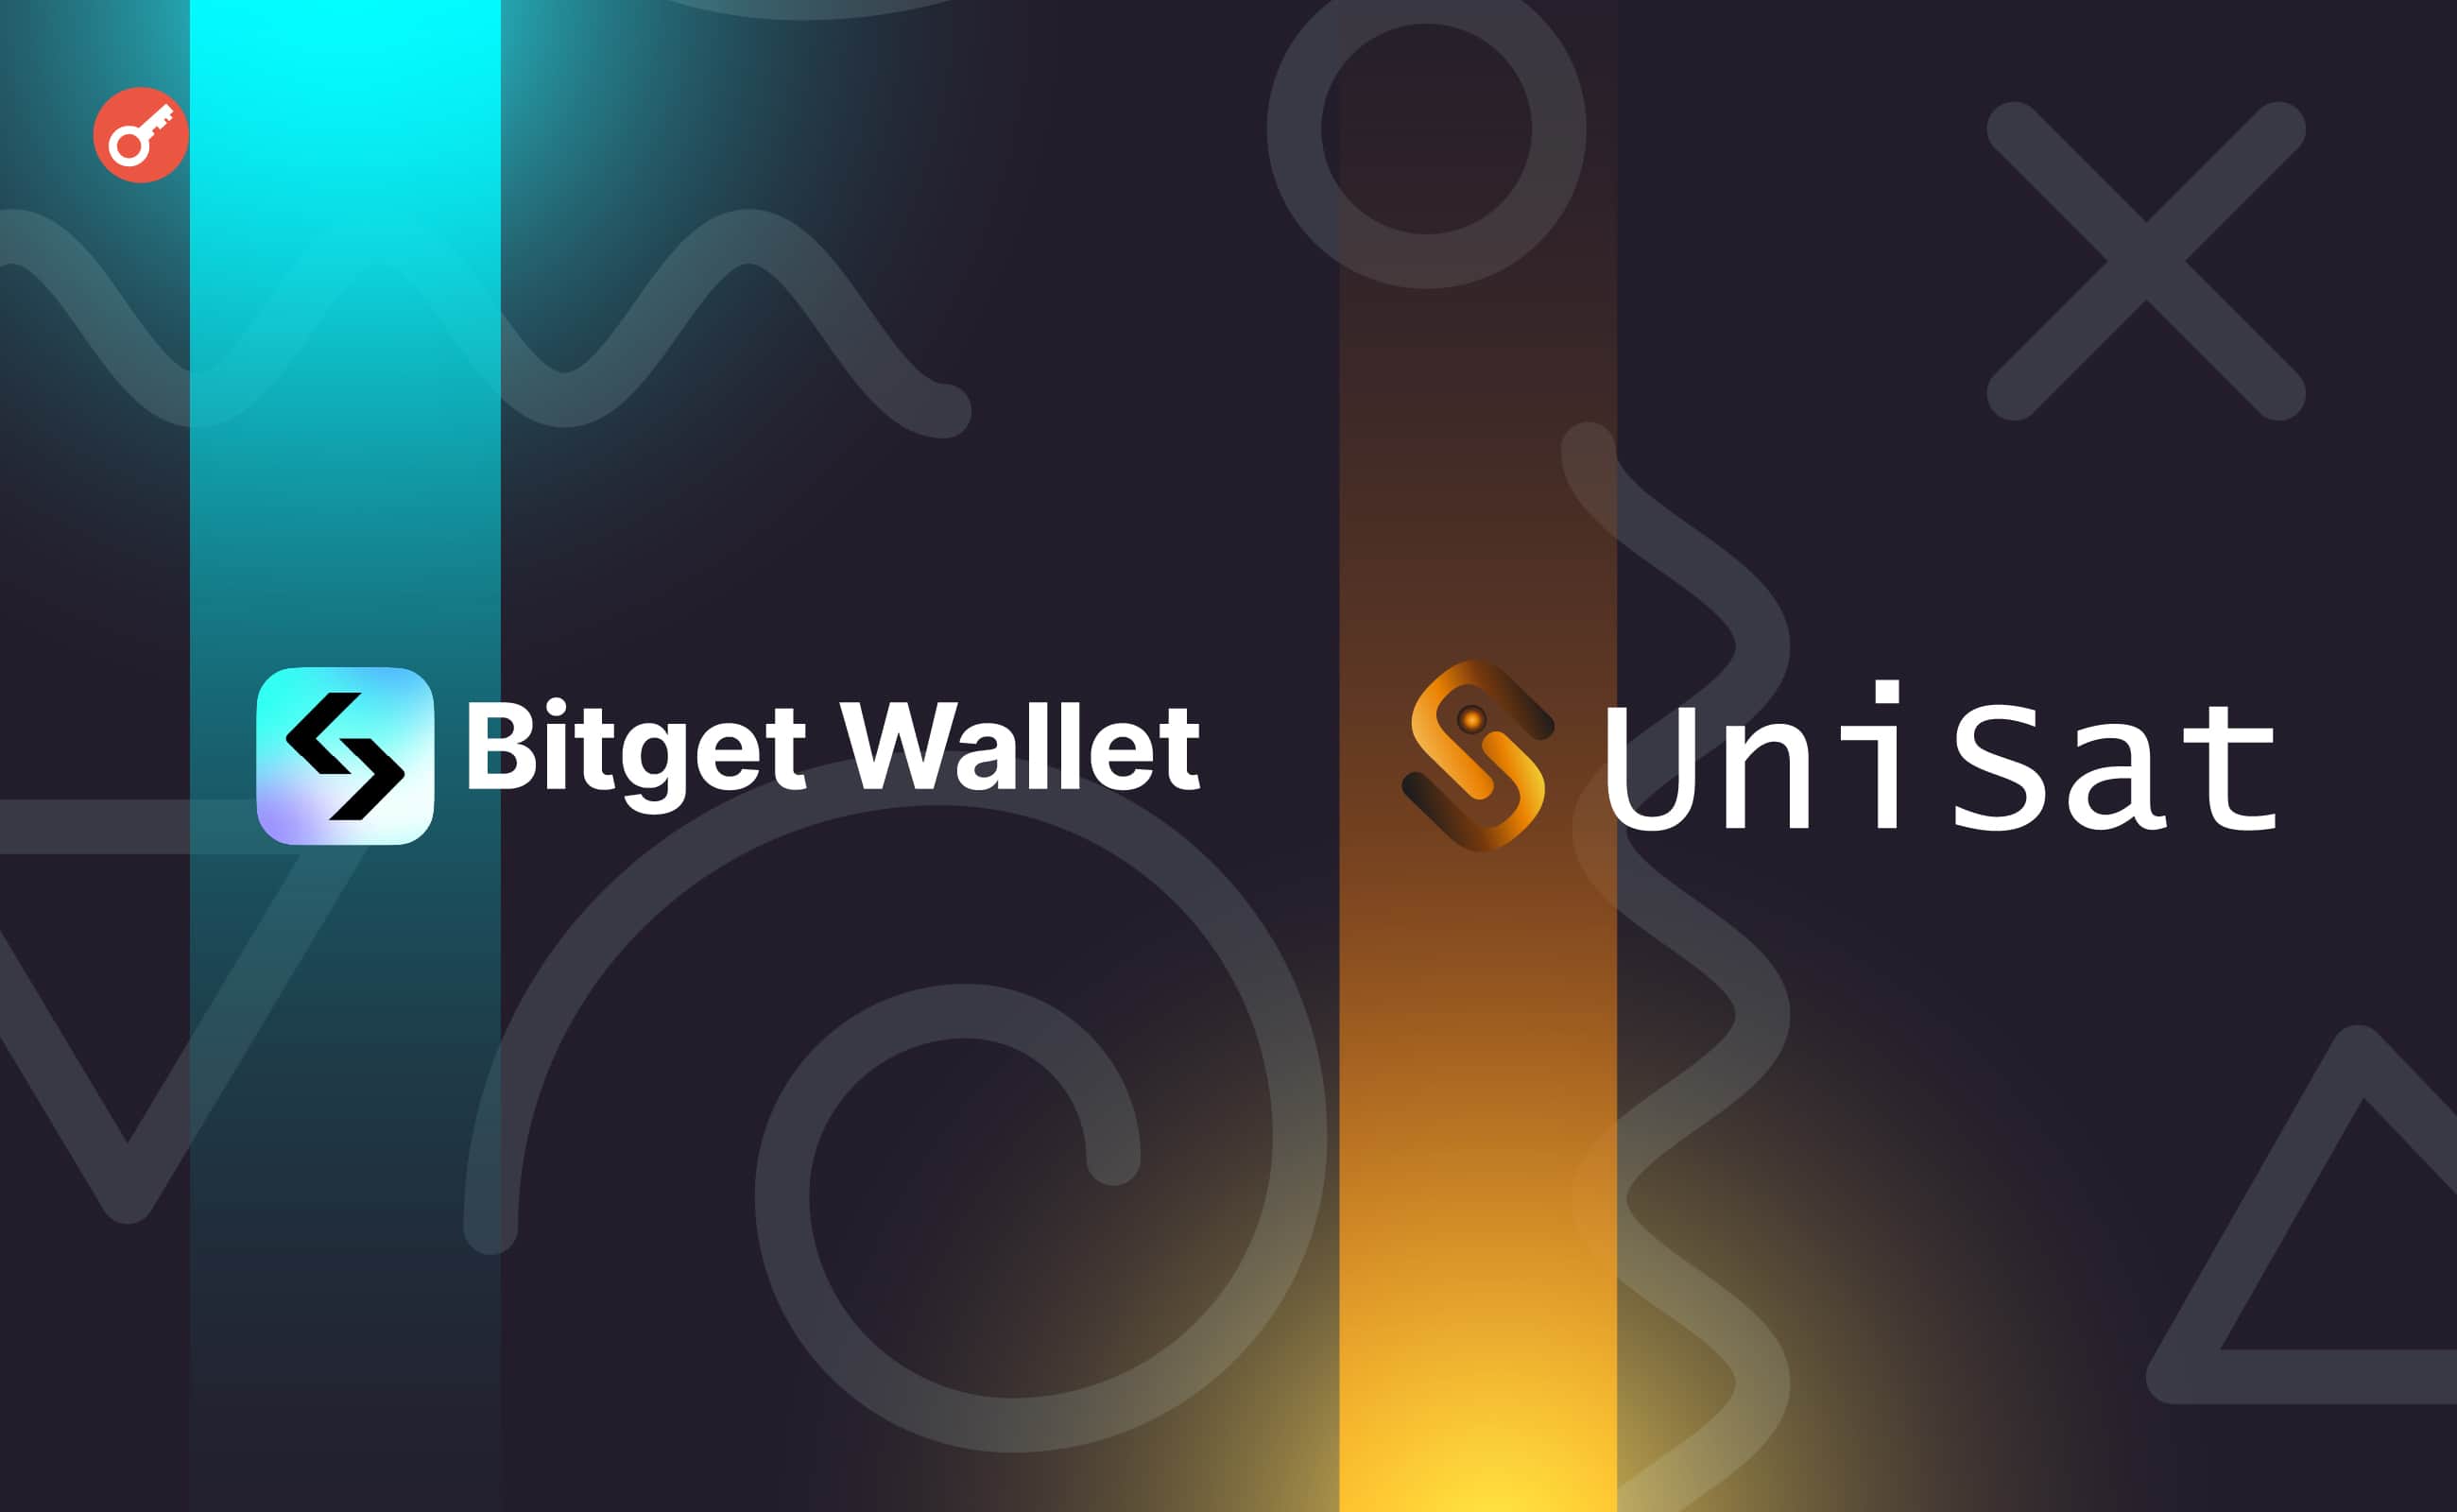 В Bitget Wallet объявили о партнерстве с UniSat и запуске платформы Task2Get. Заглавный коллаж новости.